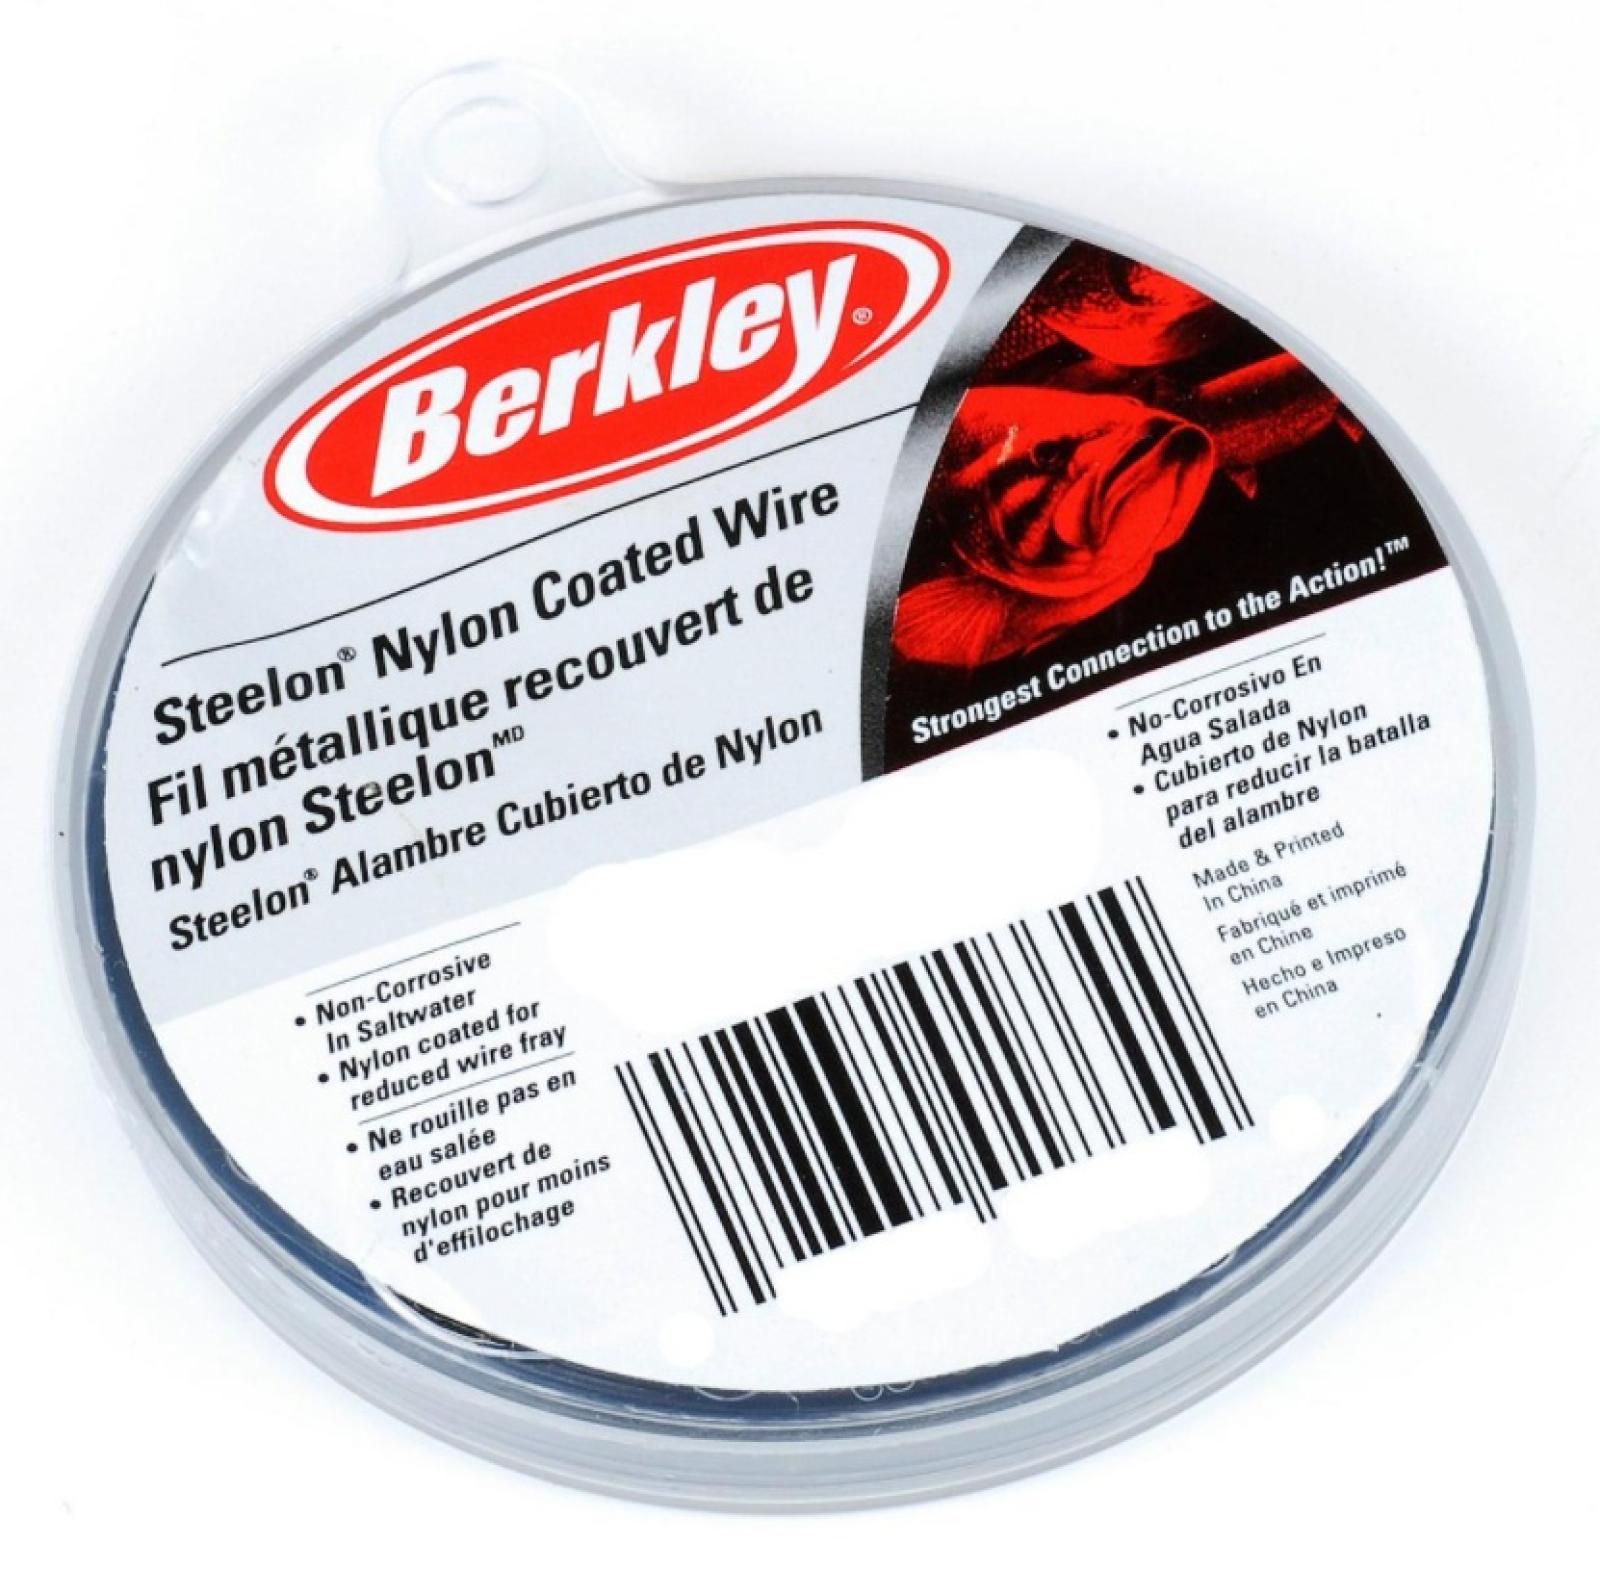 Berkley Steelon Nylon Coated Wire